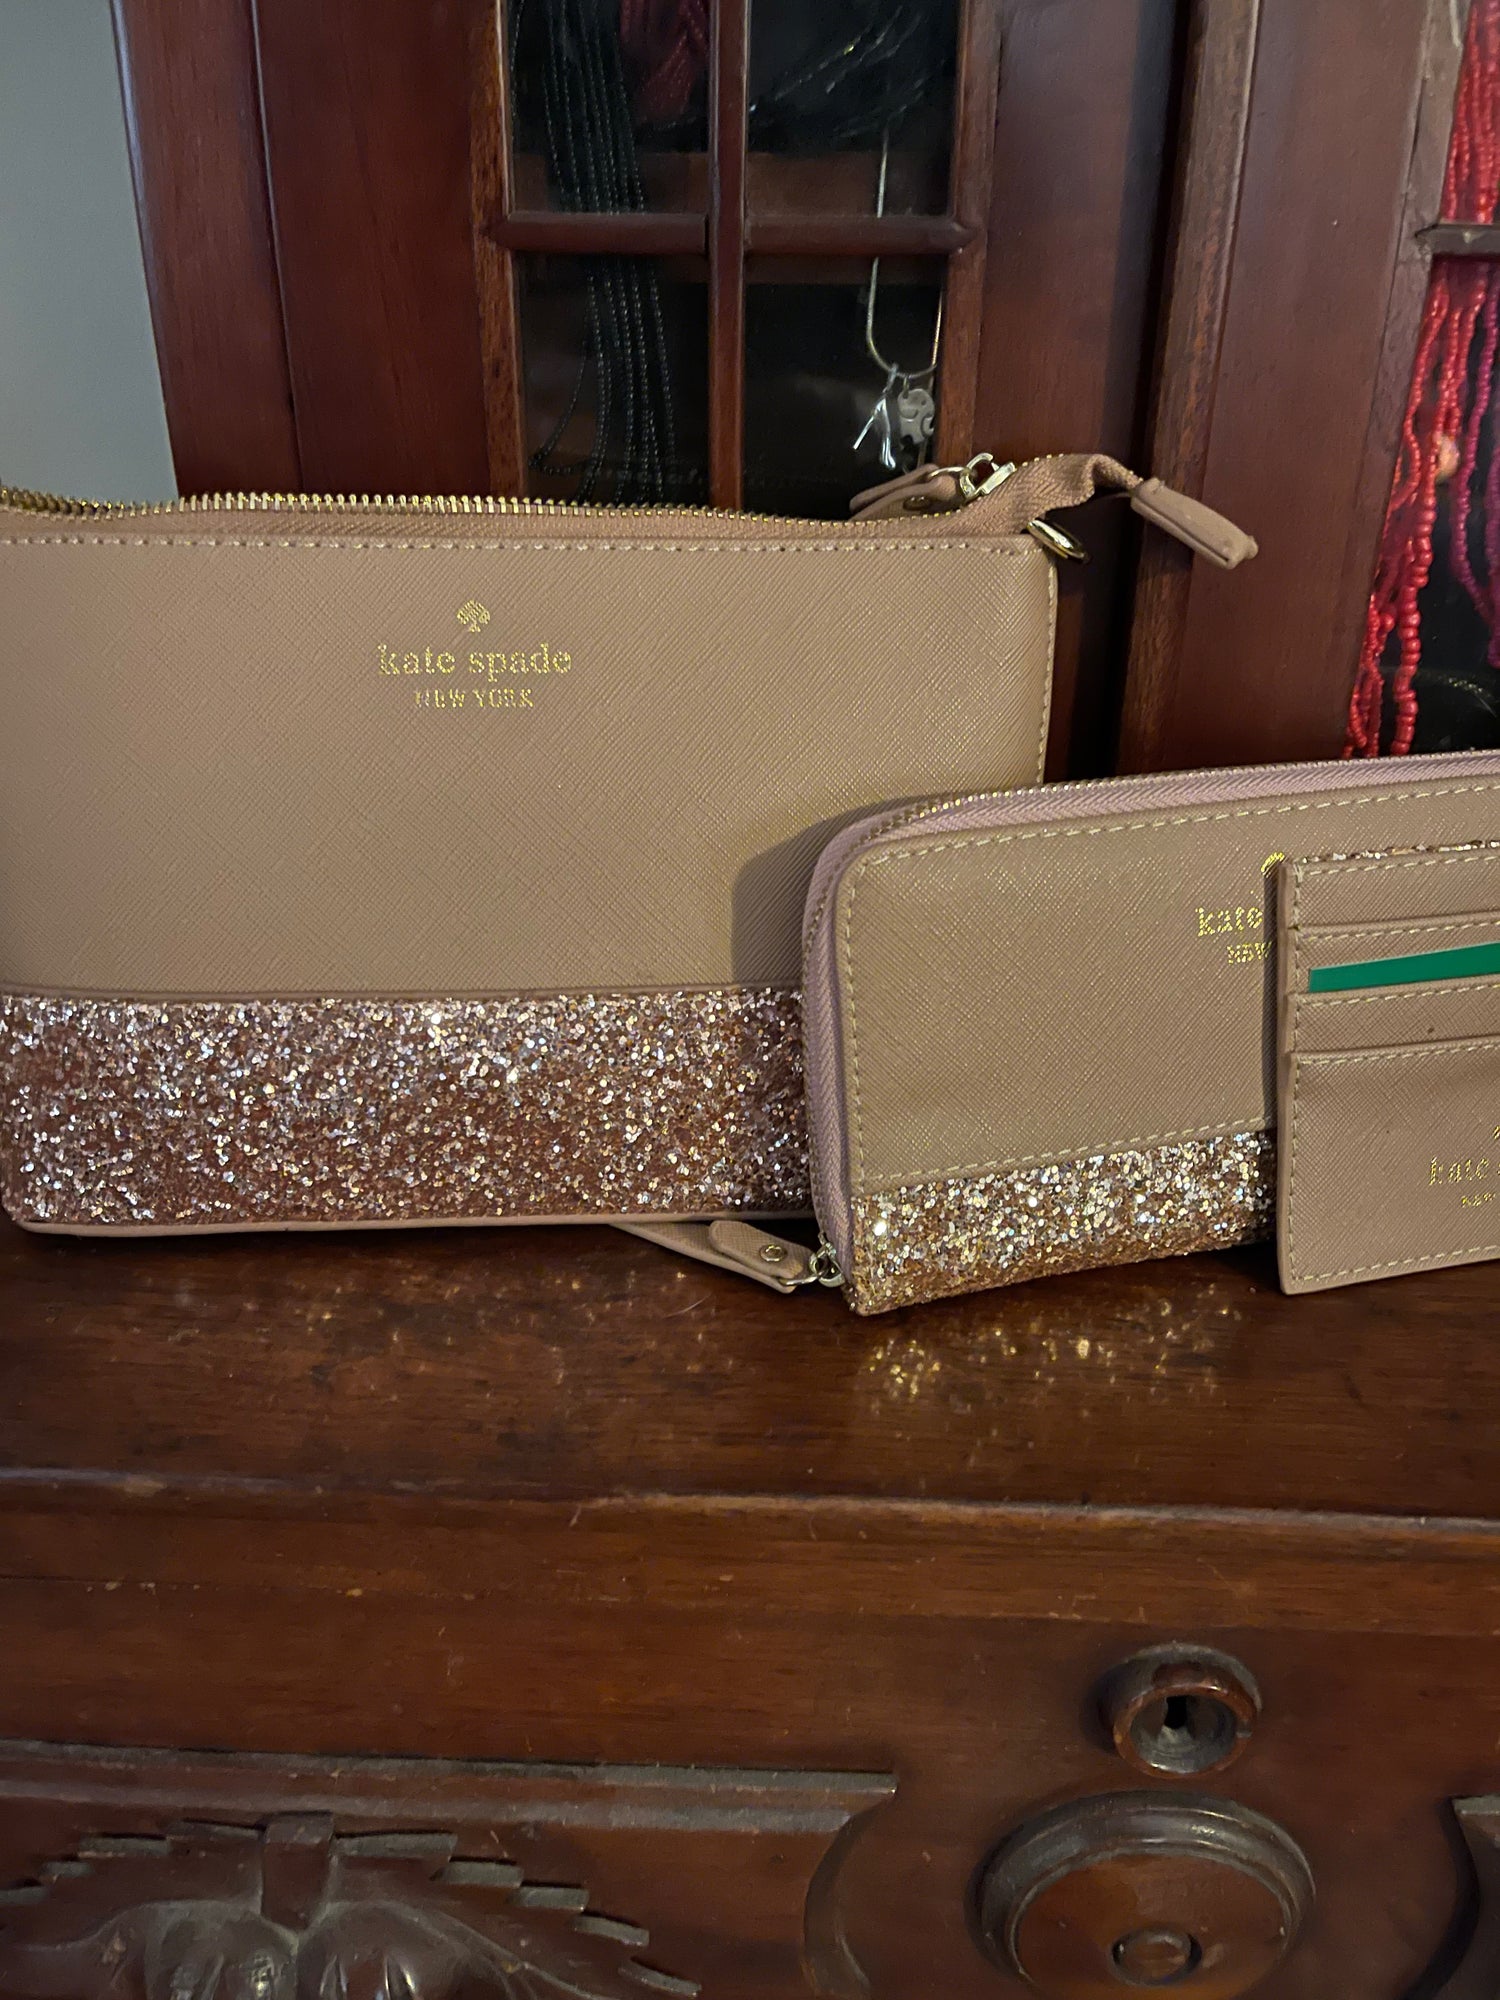 kate spade new york Glitter Rose Bags & Handbags for Women for sale | eBay